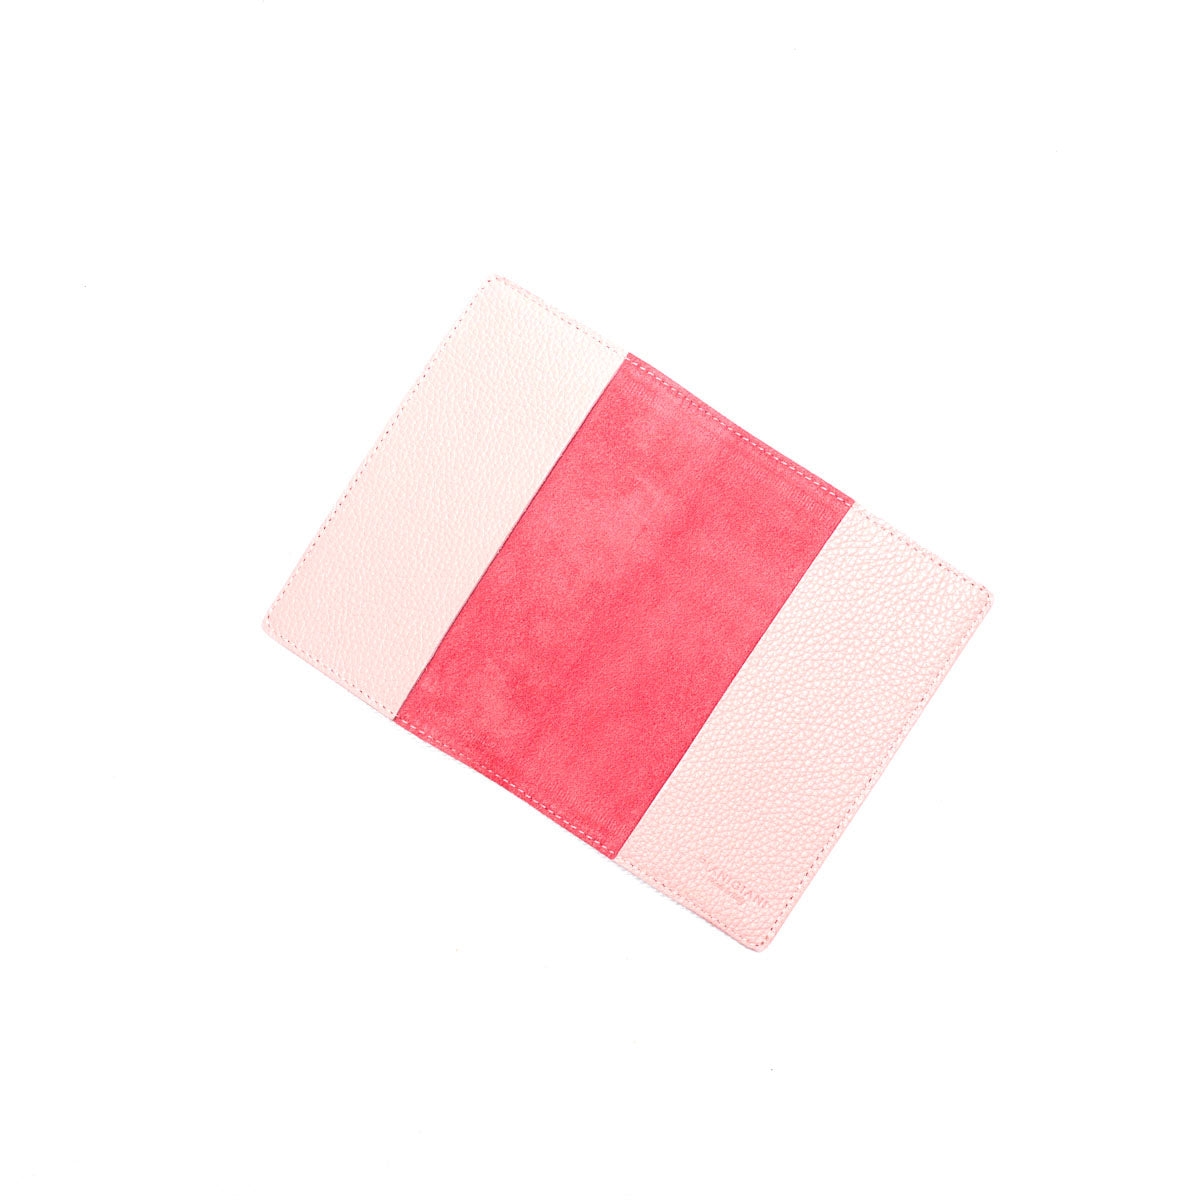 Porta passaporto in pelle martellata rosa,prodotto da Pianigiani Bags.